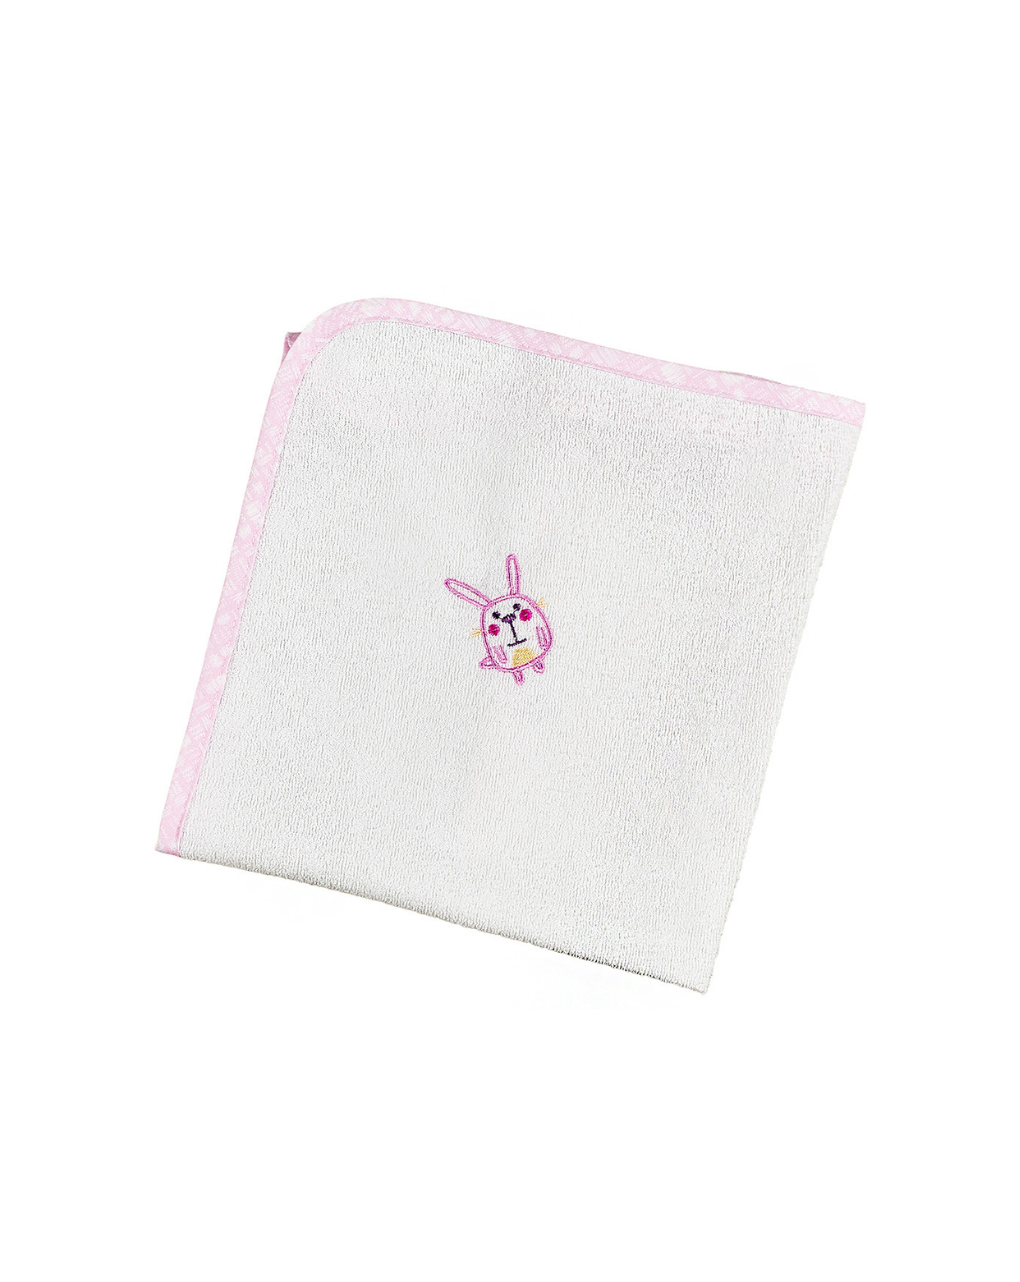 ο κόσμος του μωρού σελτεδάκι 60x80 cm πλαστικοποιημένης πετσέτας elephant ροζ 11221